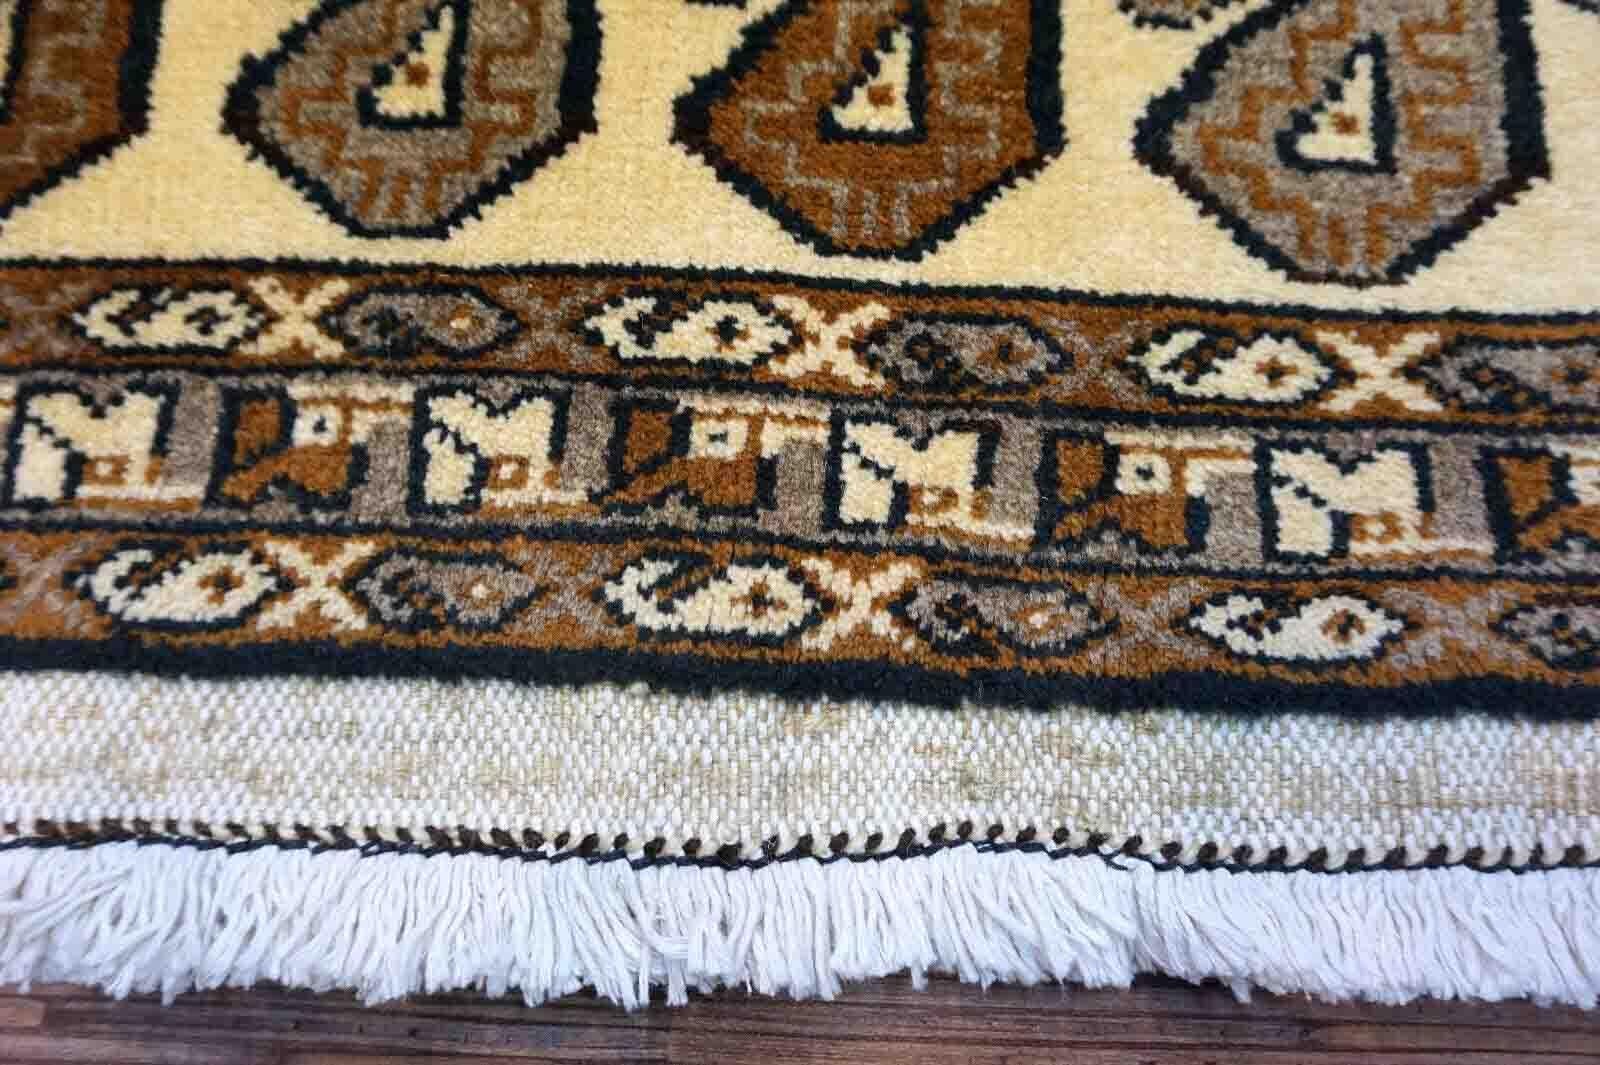 Tapis Gabbeh vintage fait à la main, de couleur beige, avec un motif paisley répété. Le tapis est de la fin du 20ème siècle en bon état d'origine.

-condition : original bon,

-circa : 1970,

-Taille : 3,2' x 6,1' (99cm x 187cm),

-Matériau :